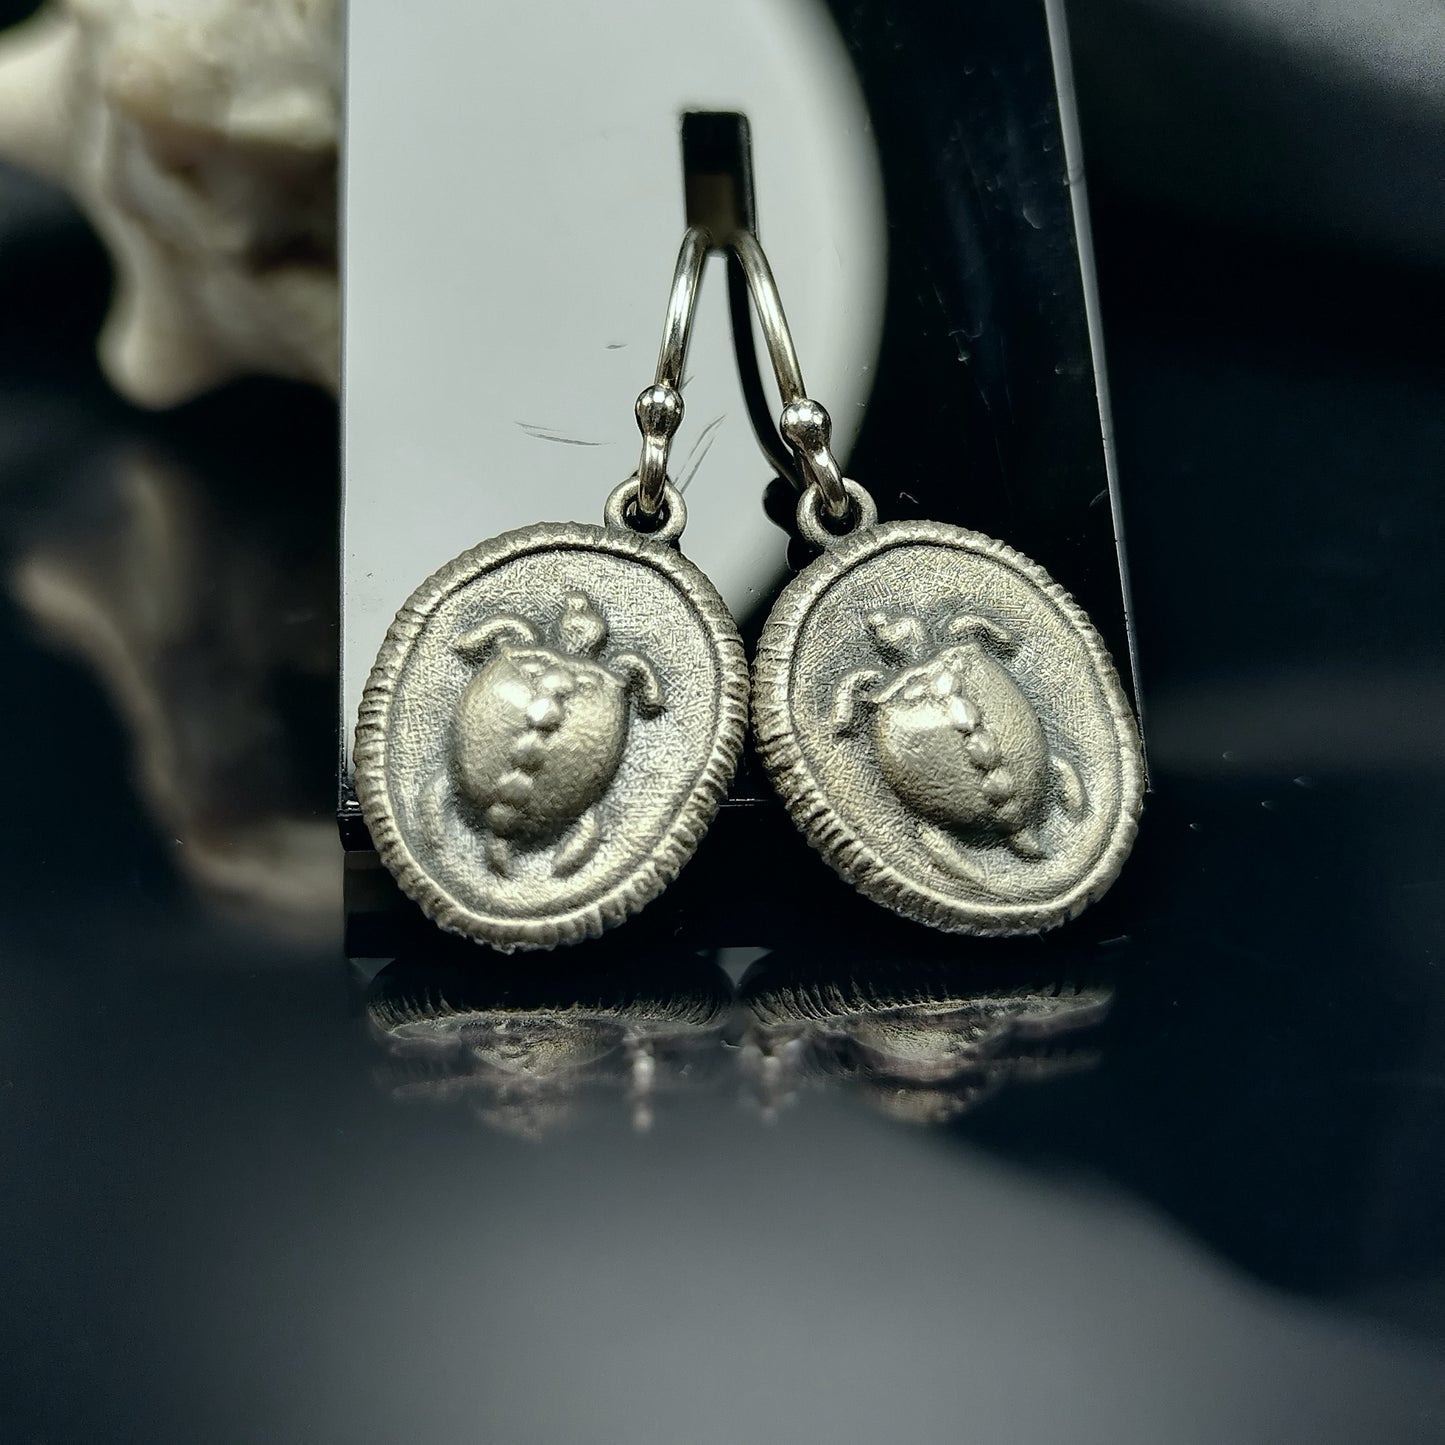 Schildkröte antike griechische Münze Aegina Kopie Ohrring Sterlingsilber mythologische Schildkrötenmünze